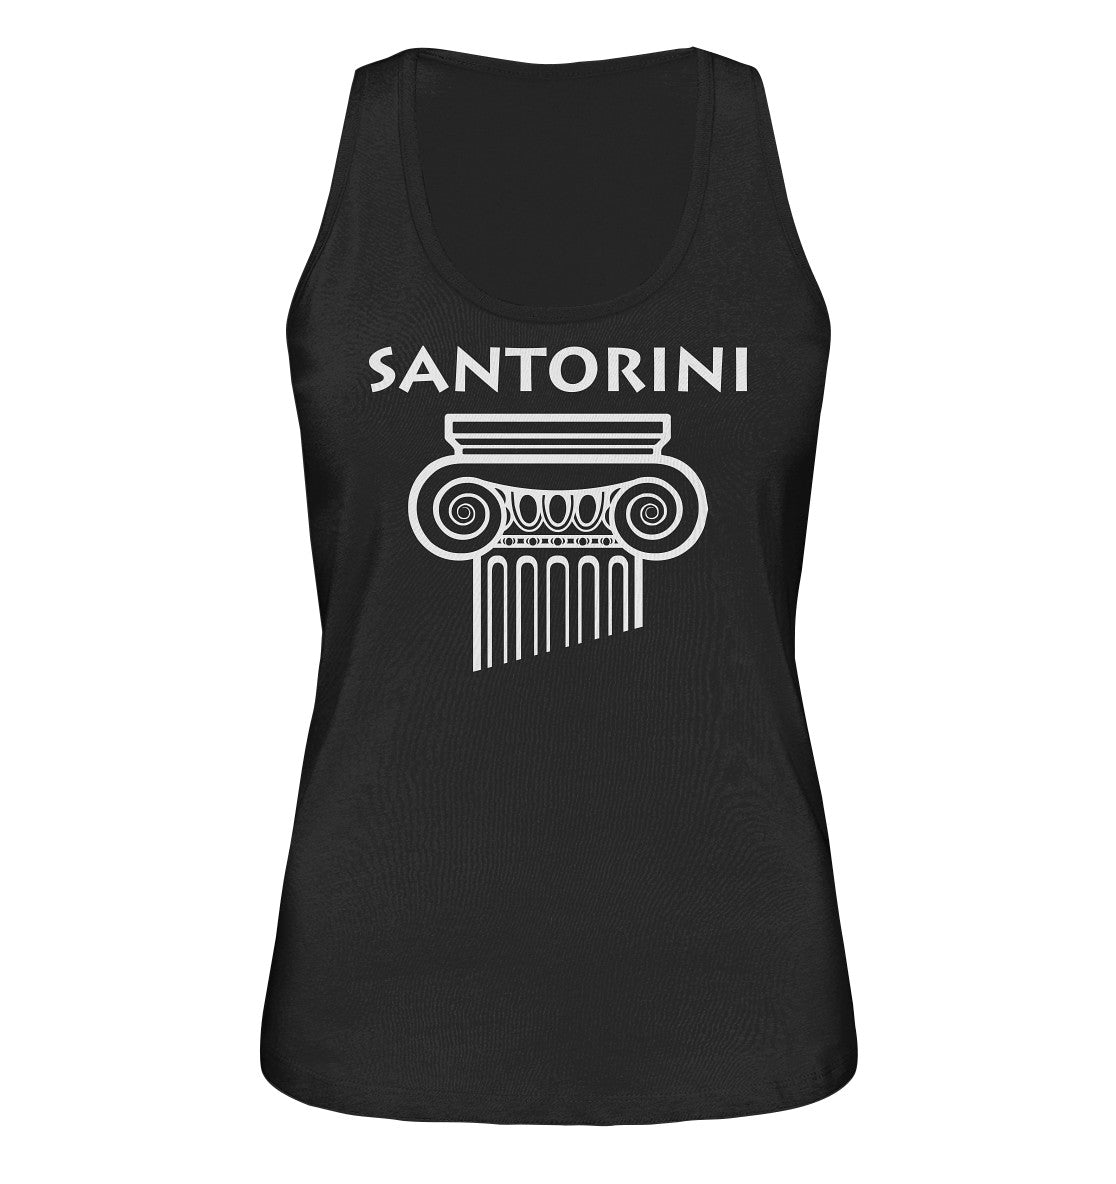 Santorini Griechischer Säulenkopf - Ladies Organic Tank-Top